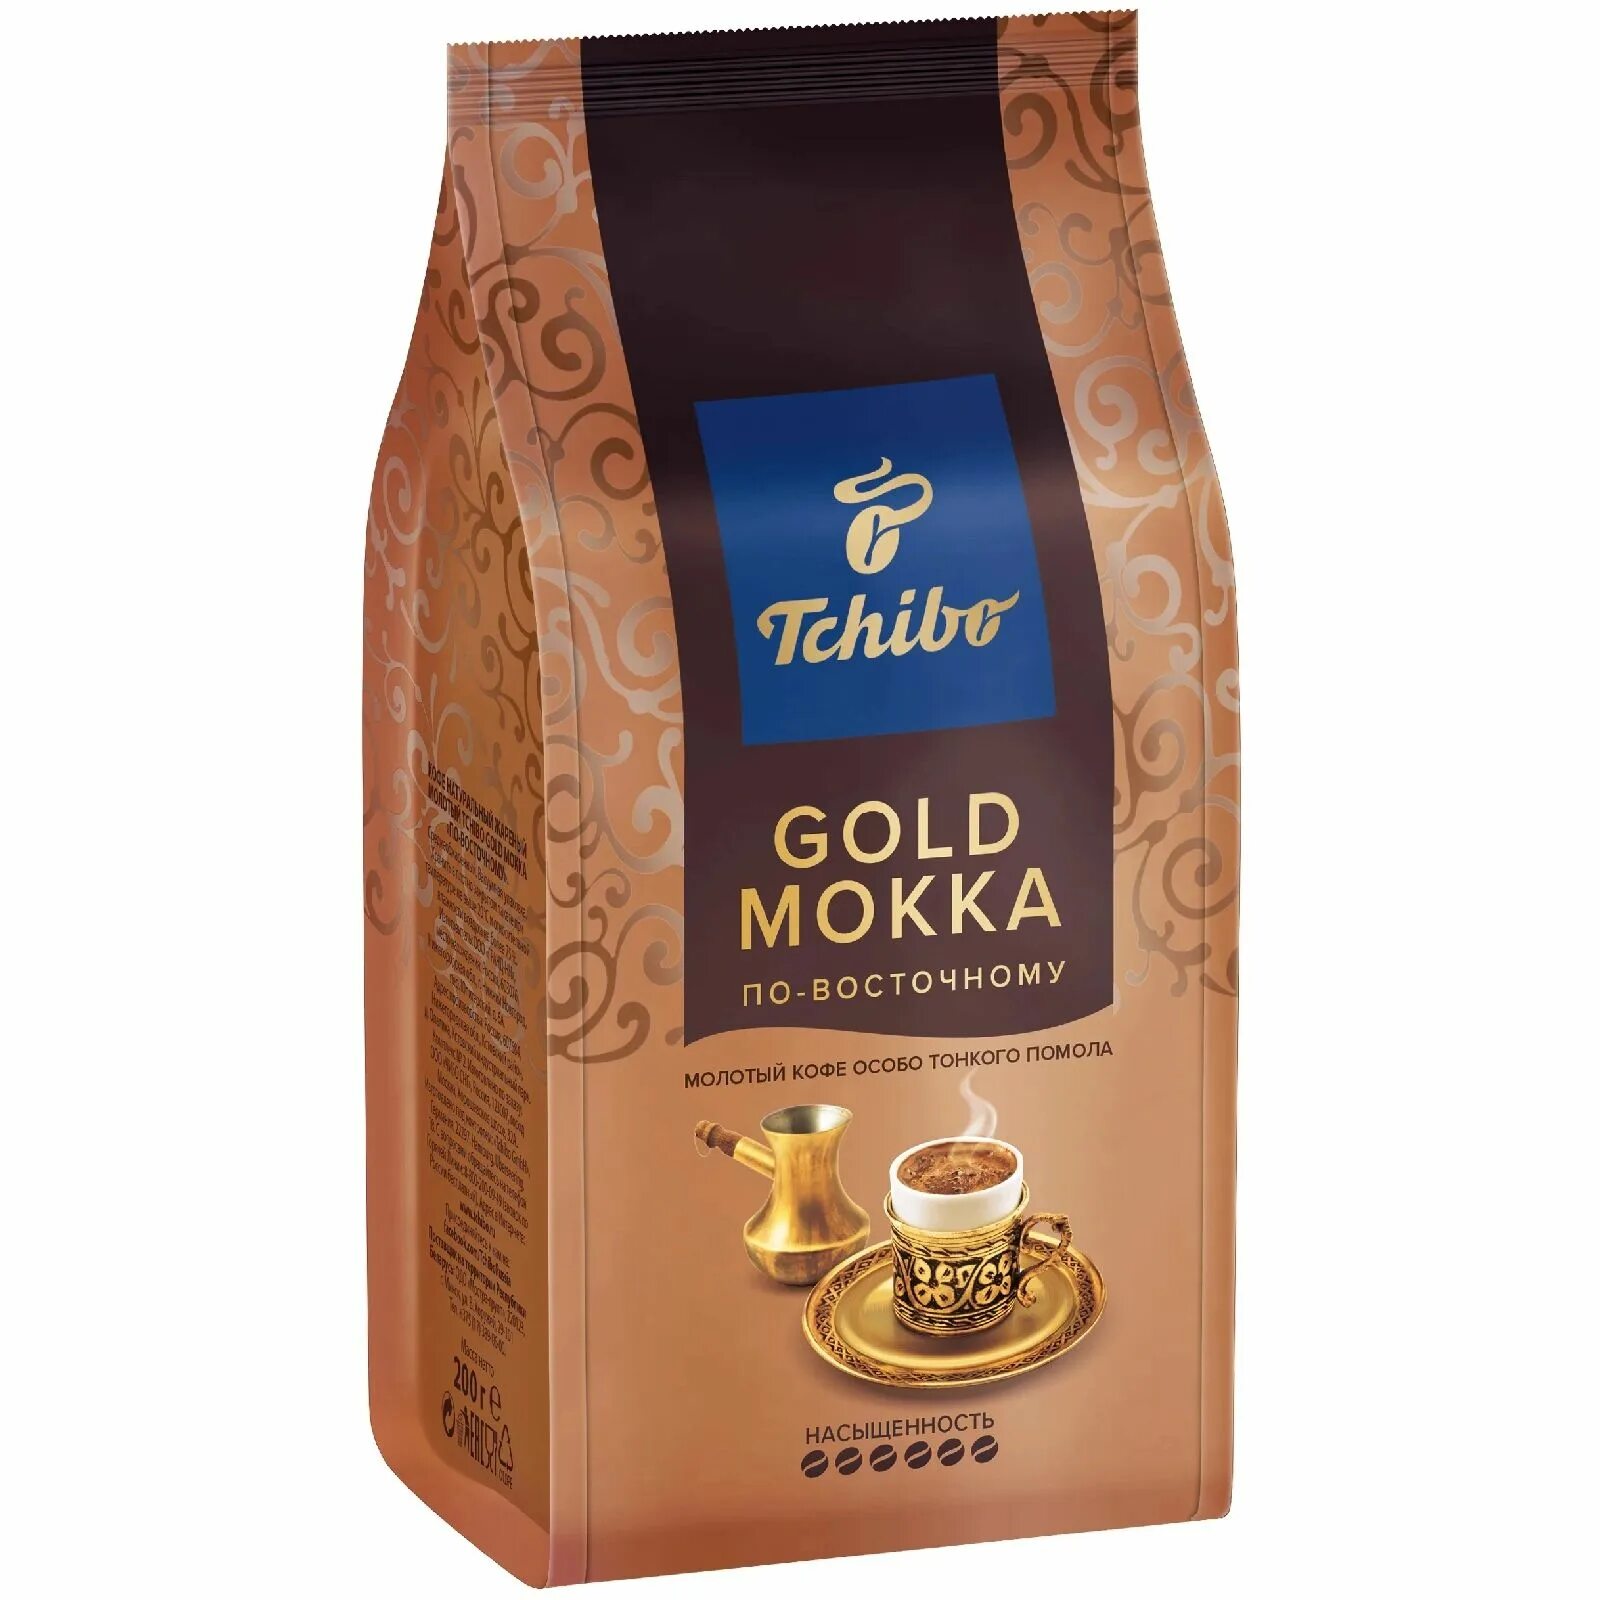 Кофе чибо отзывы. Кофе Tchibo Gold Mokka. Кофе Tchibo Gold Mokka 200 гр по восточному. Tchibo Gold Mokka по-восточному молотый. Кофе Tchibo Gold Mokka 100.